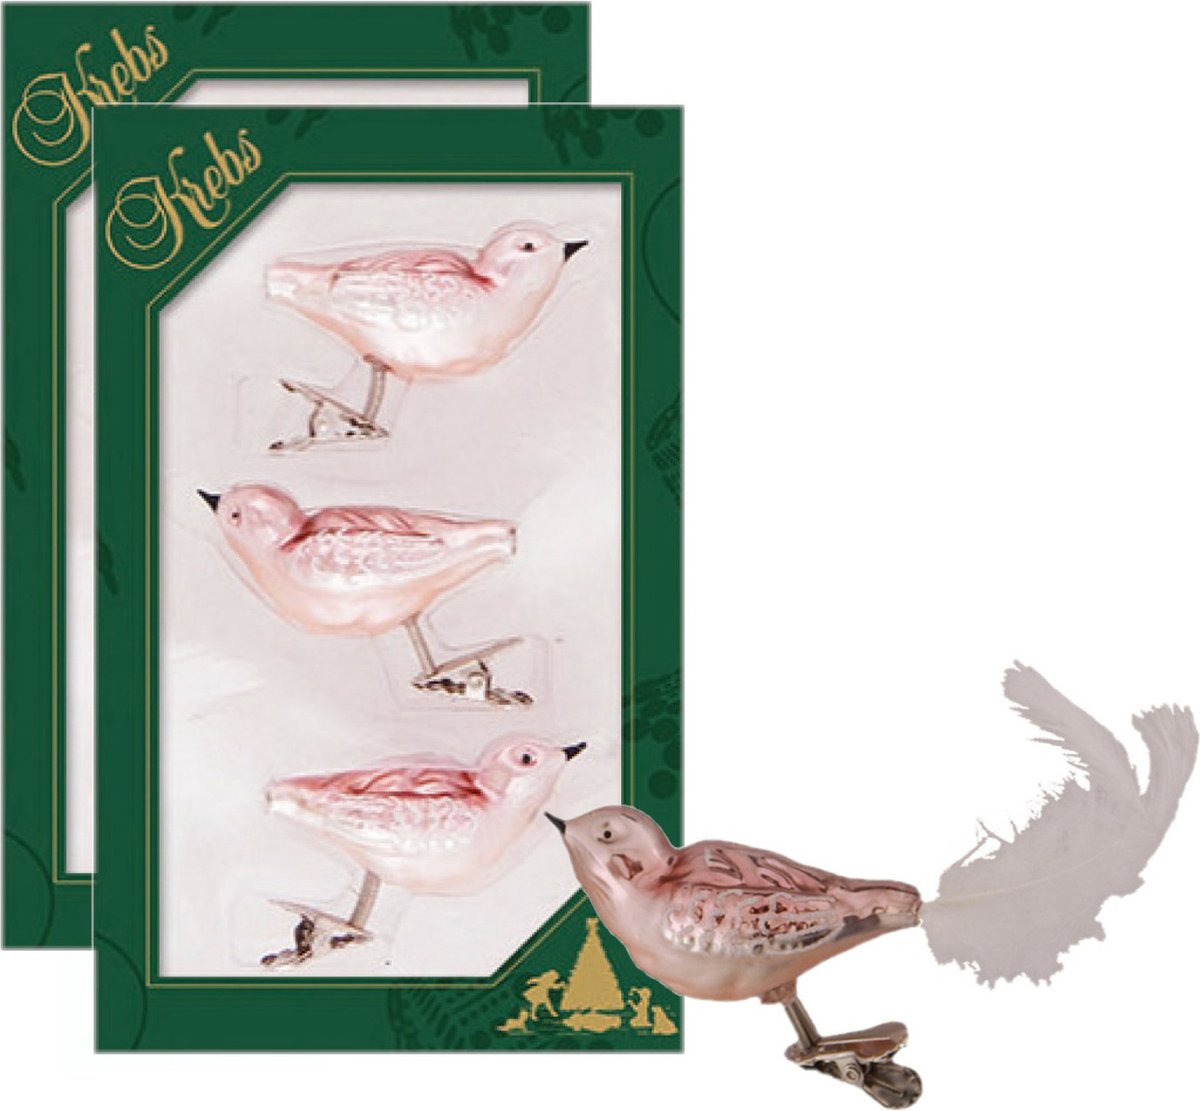 6x stuks luxe glazen decoratie vogels op clip velvet roze 11 cm - Decoratievogeltjes - Kerstboomversiering